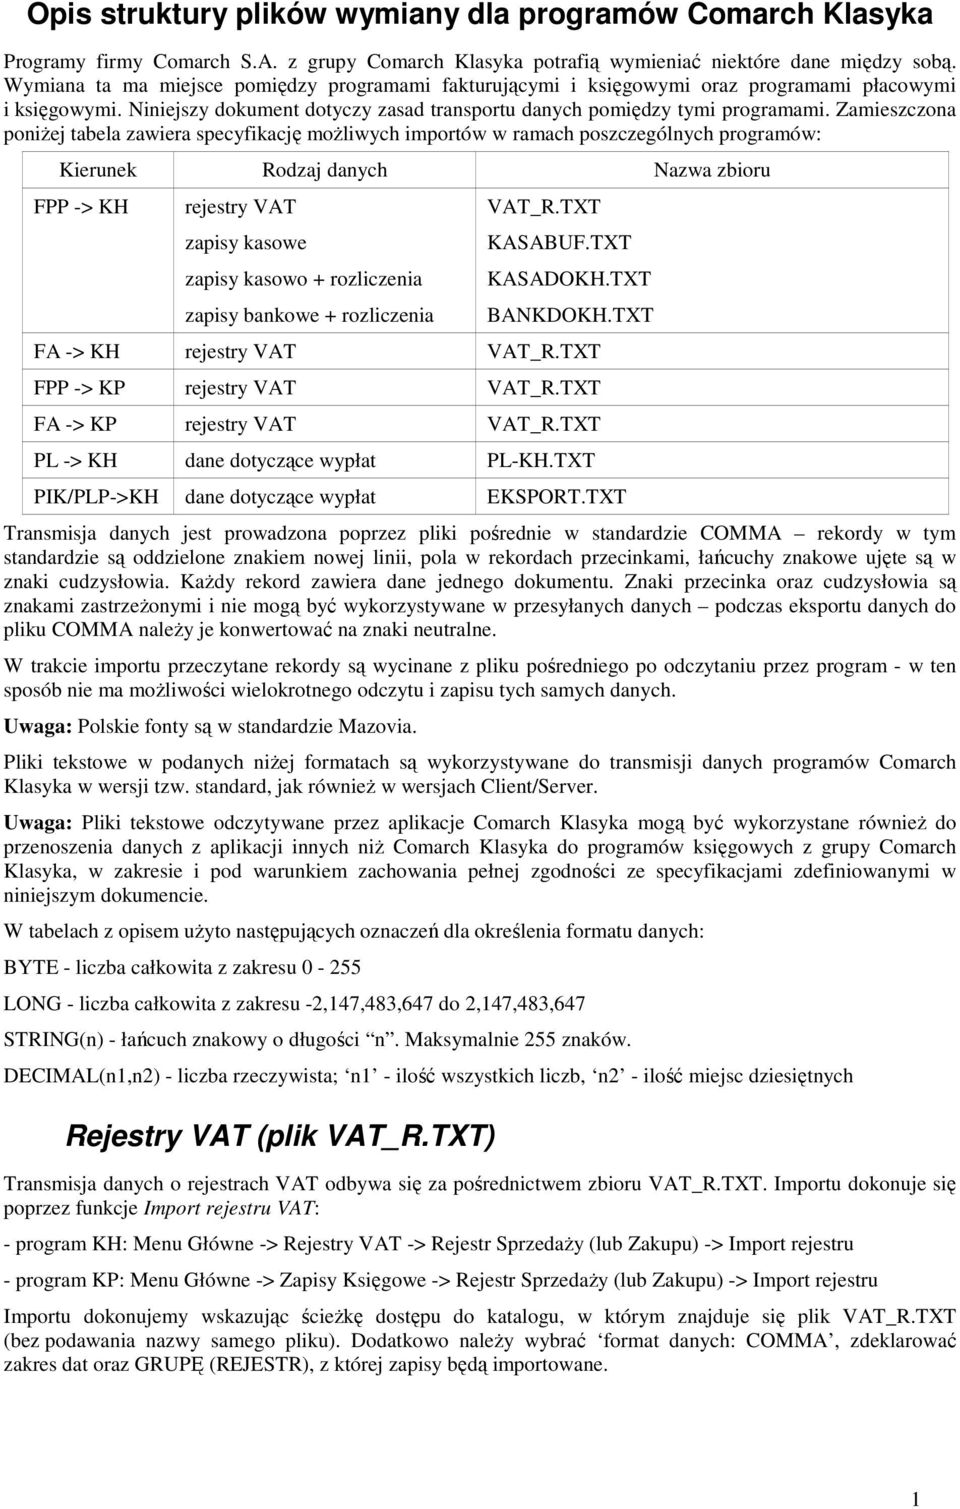 Zamieszczona poniŝej tabela zawiera specyfikację moŝliwych importów w ramach poszczególnych programów: Kierunek Rodzaj danych Nazwa zbioru FPP -> KH rejestry VAT zapisy kasowe zapisy kasowo +